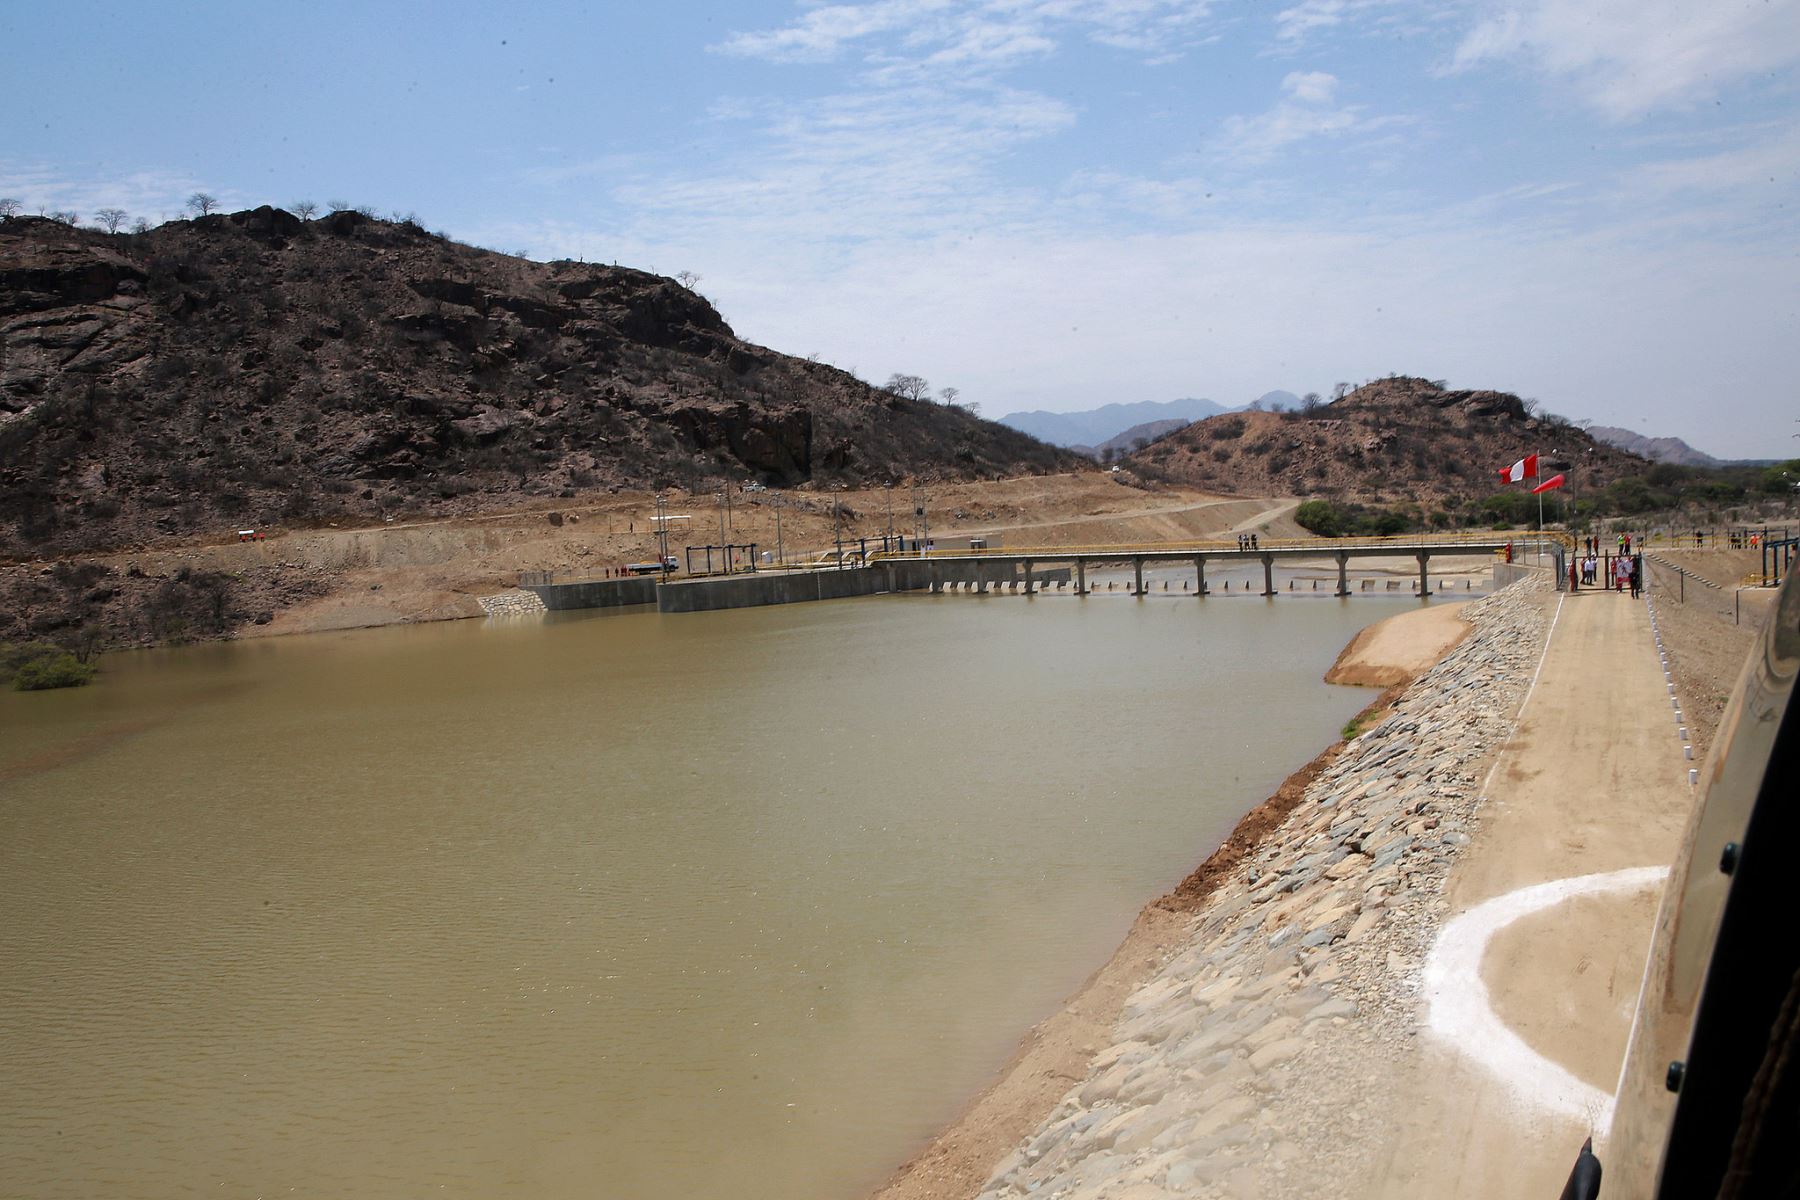 La Autoridad Nacional del Agua (ANA) dispuso la prórroga, para el desarrollo del Proyecto Especial de Irrigación e Hidroenergético Olmos-Tinajones del Gobierno Regional de Lambayeque, la reserva de recursos hídricos proveniente de los ríos Huancabamba, Tabaconas, Manchara, Chotano y Chunchuca, así como de los afluentes de estos ríos por el plazo de dos años, con eficacia anticipada al 31 de mayo de 2018. ANDINA/Prensa Presidencia